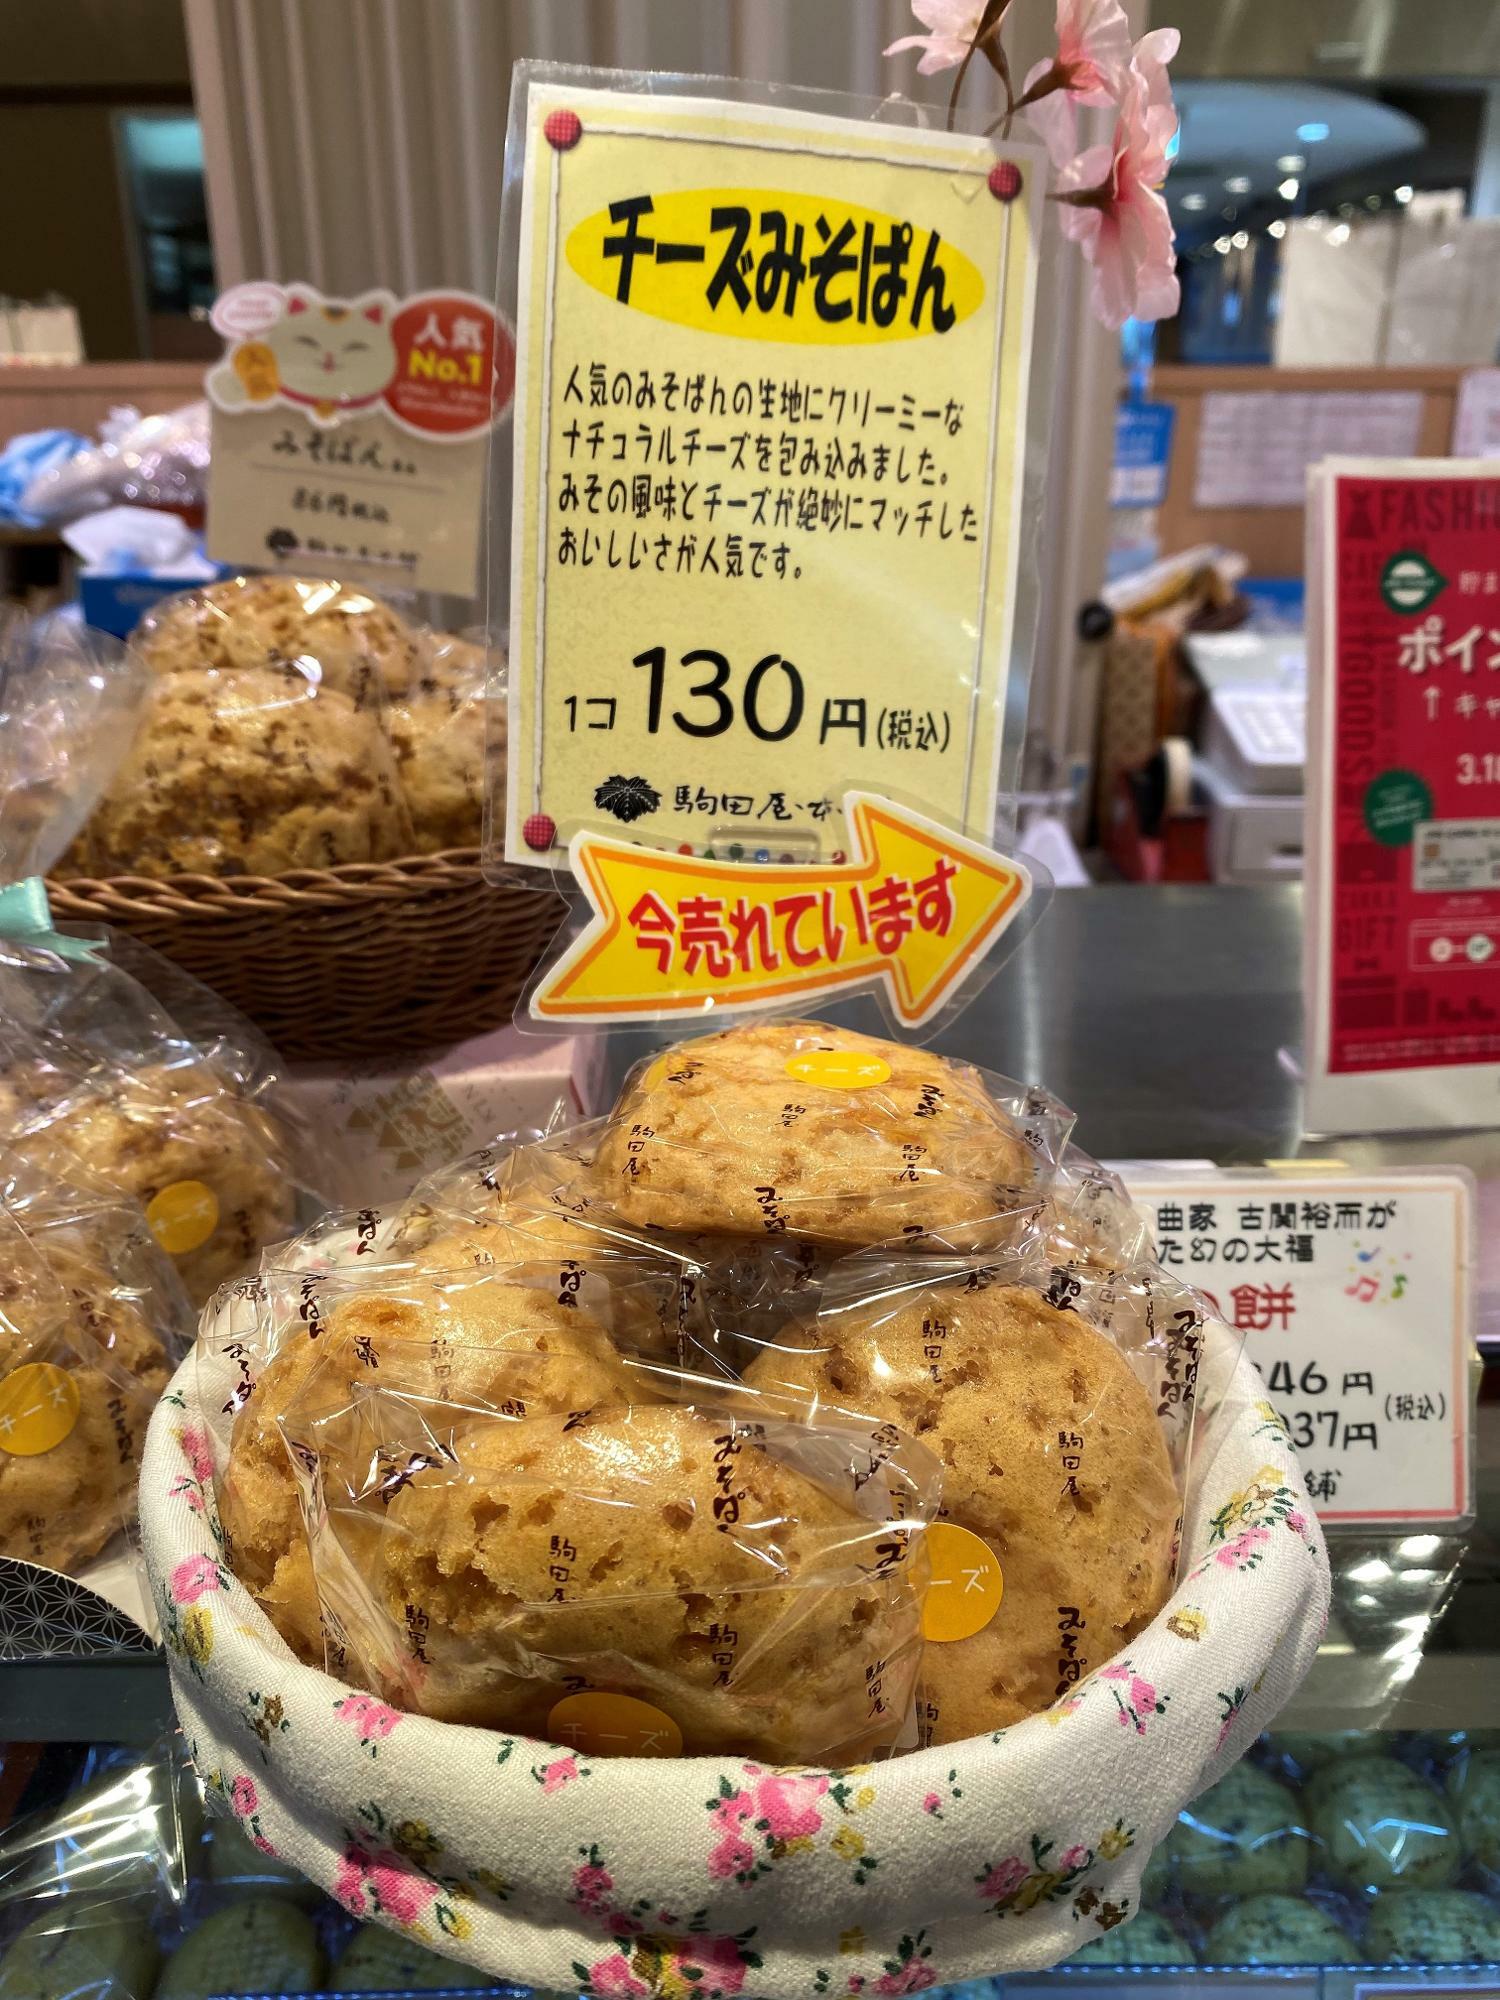 「チーズみそぱん」1個130円(税込)